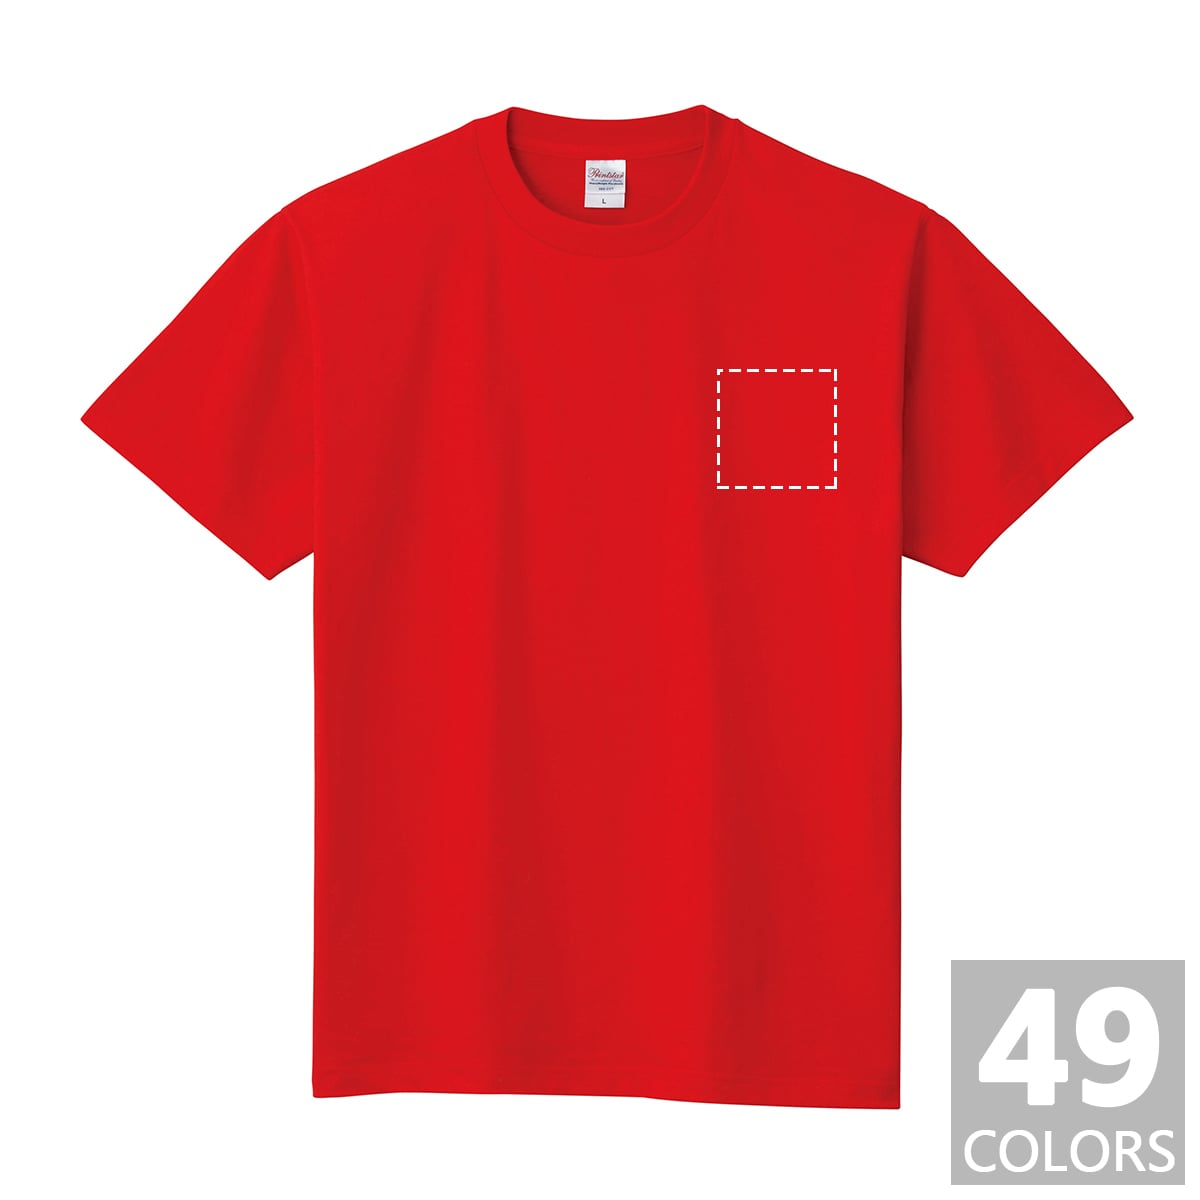 コットンTシャツ / ヘビーウェイトTシャツ(カラー) ビッグサイズ / 胸ワンポイントプリント